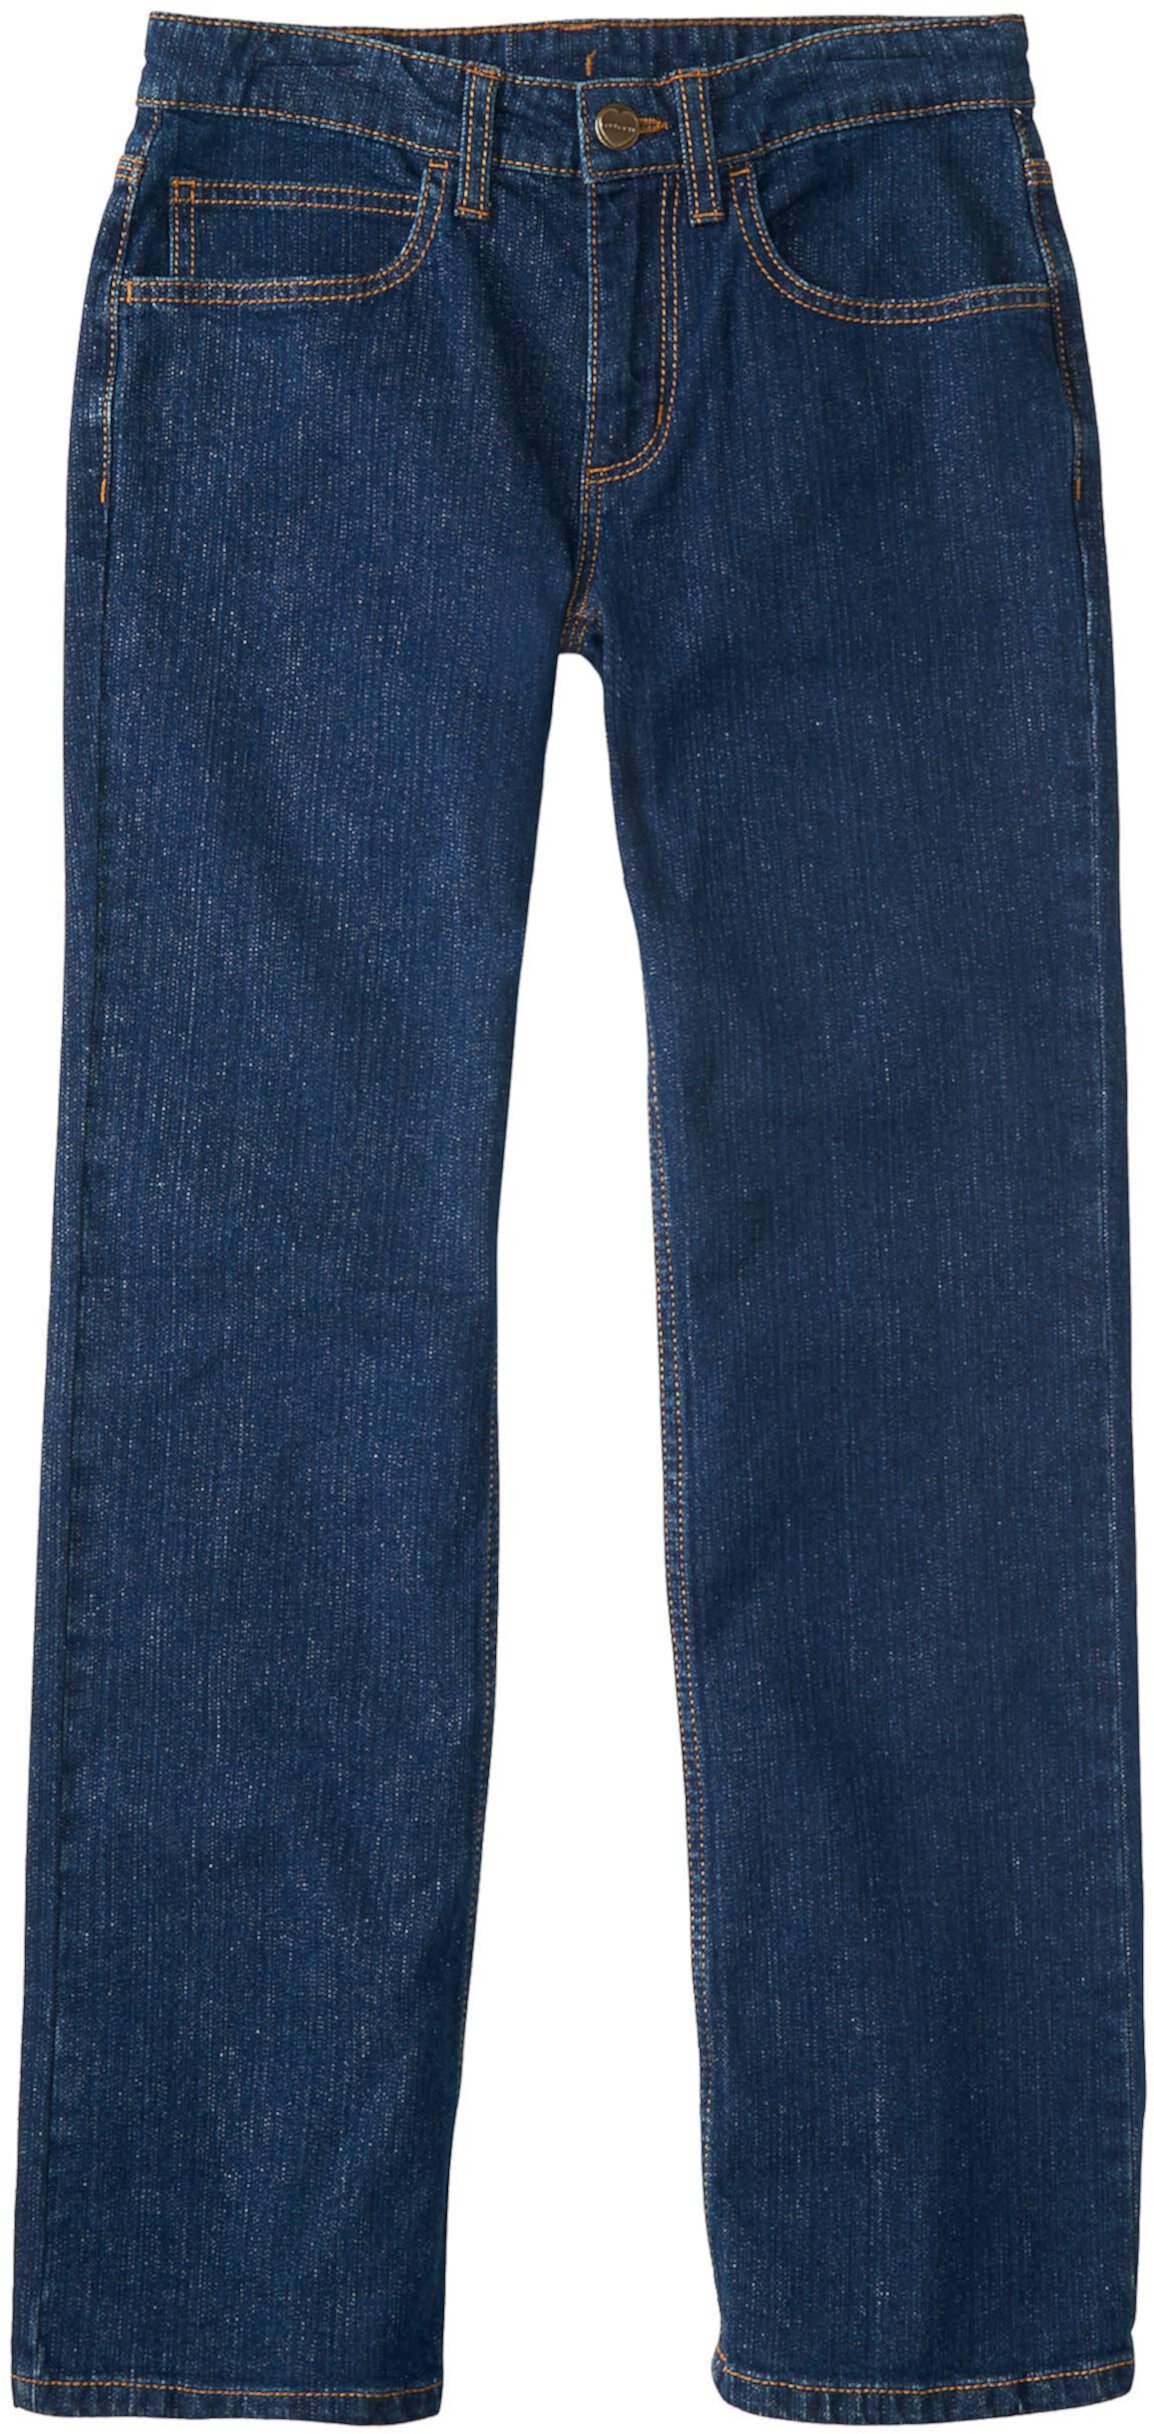 Джинсовые джинсы с 5 карманами Carhartt